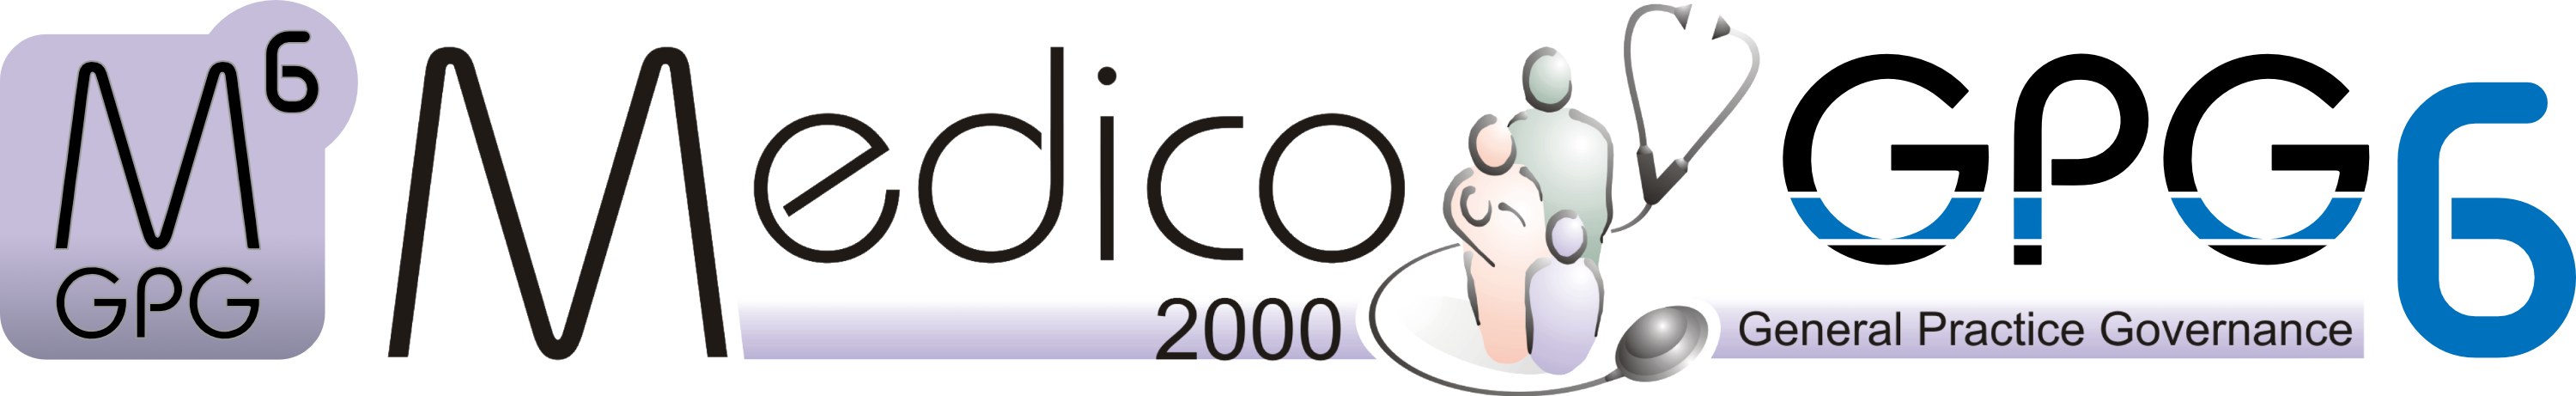 logo medico 2000 GPG